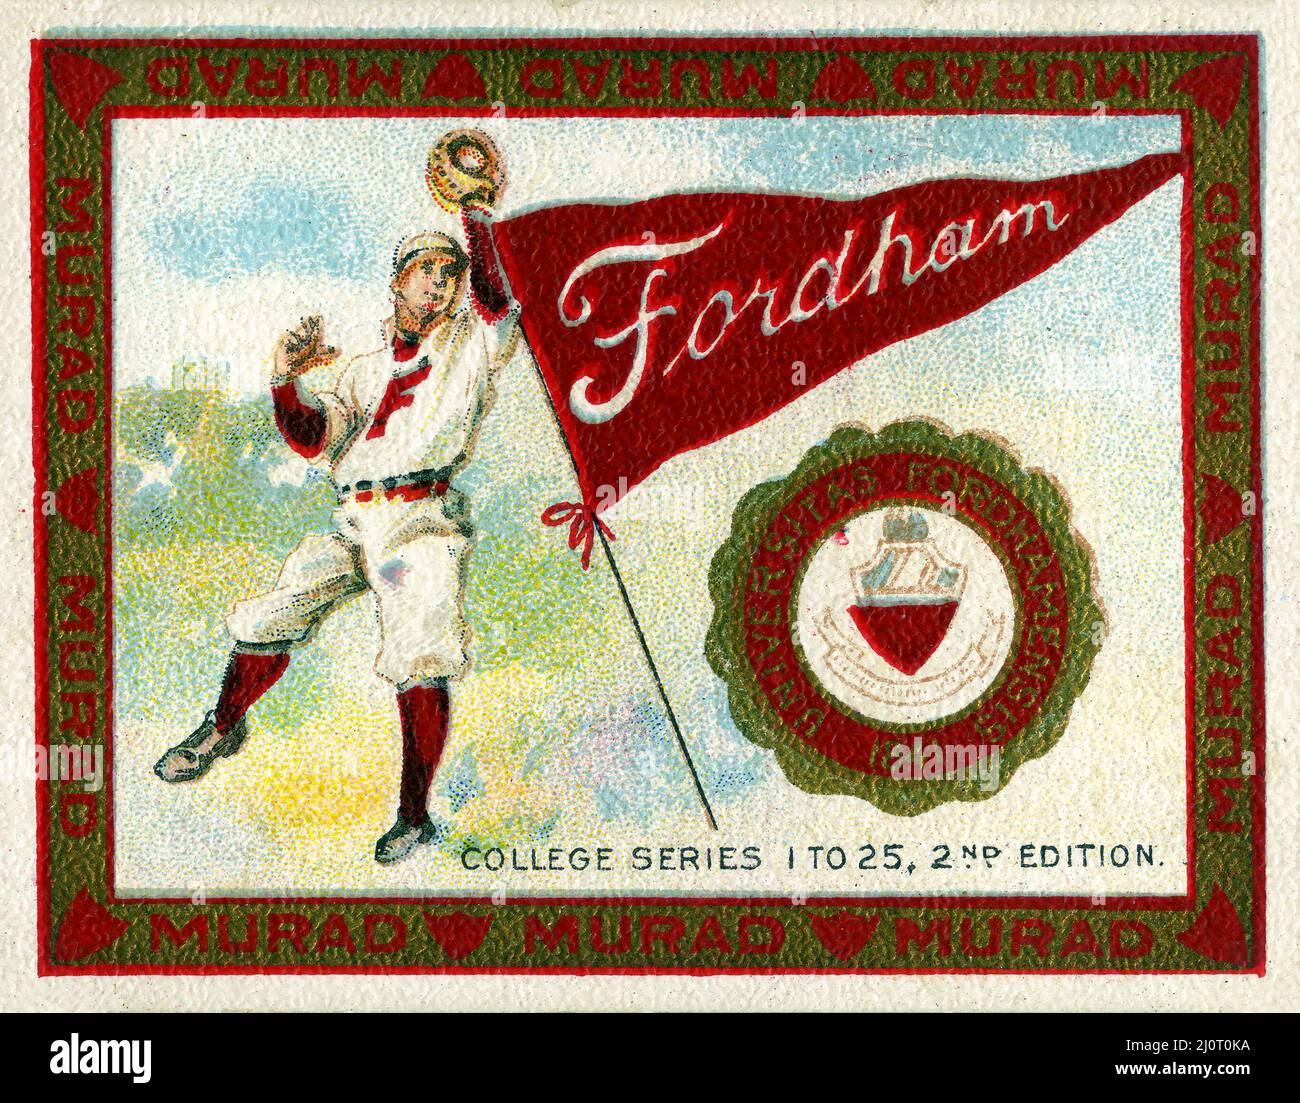 Murad Tobacco Card della College Series raffigurante un giocatore di baseball della Fordham University all'inizio del 1900s. Foto Stock